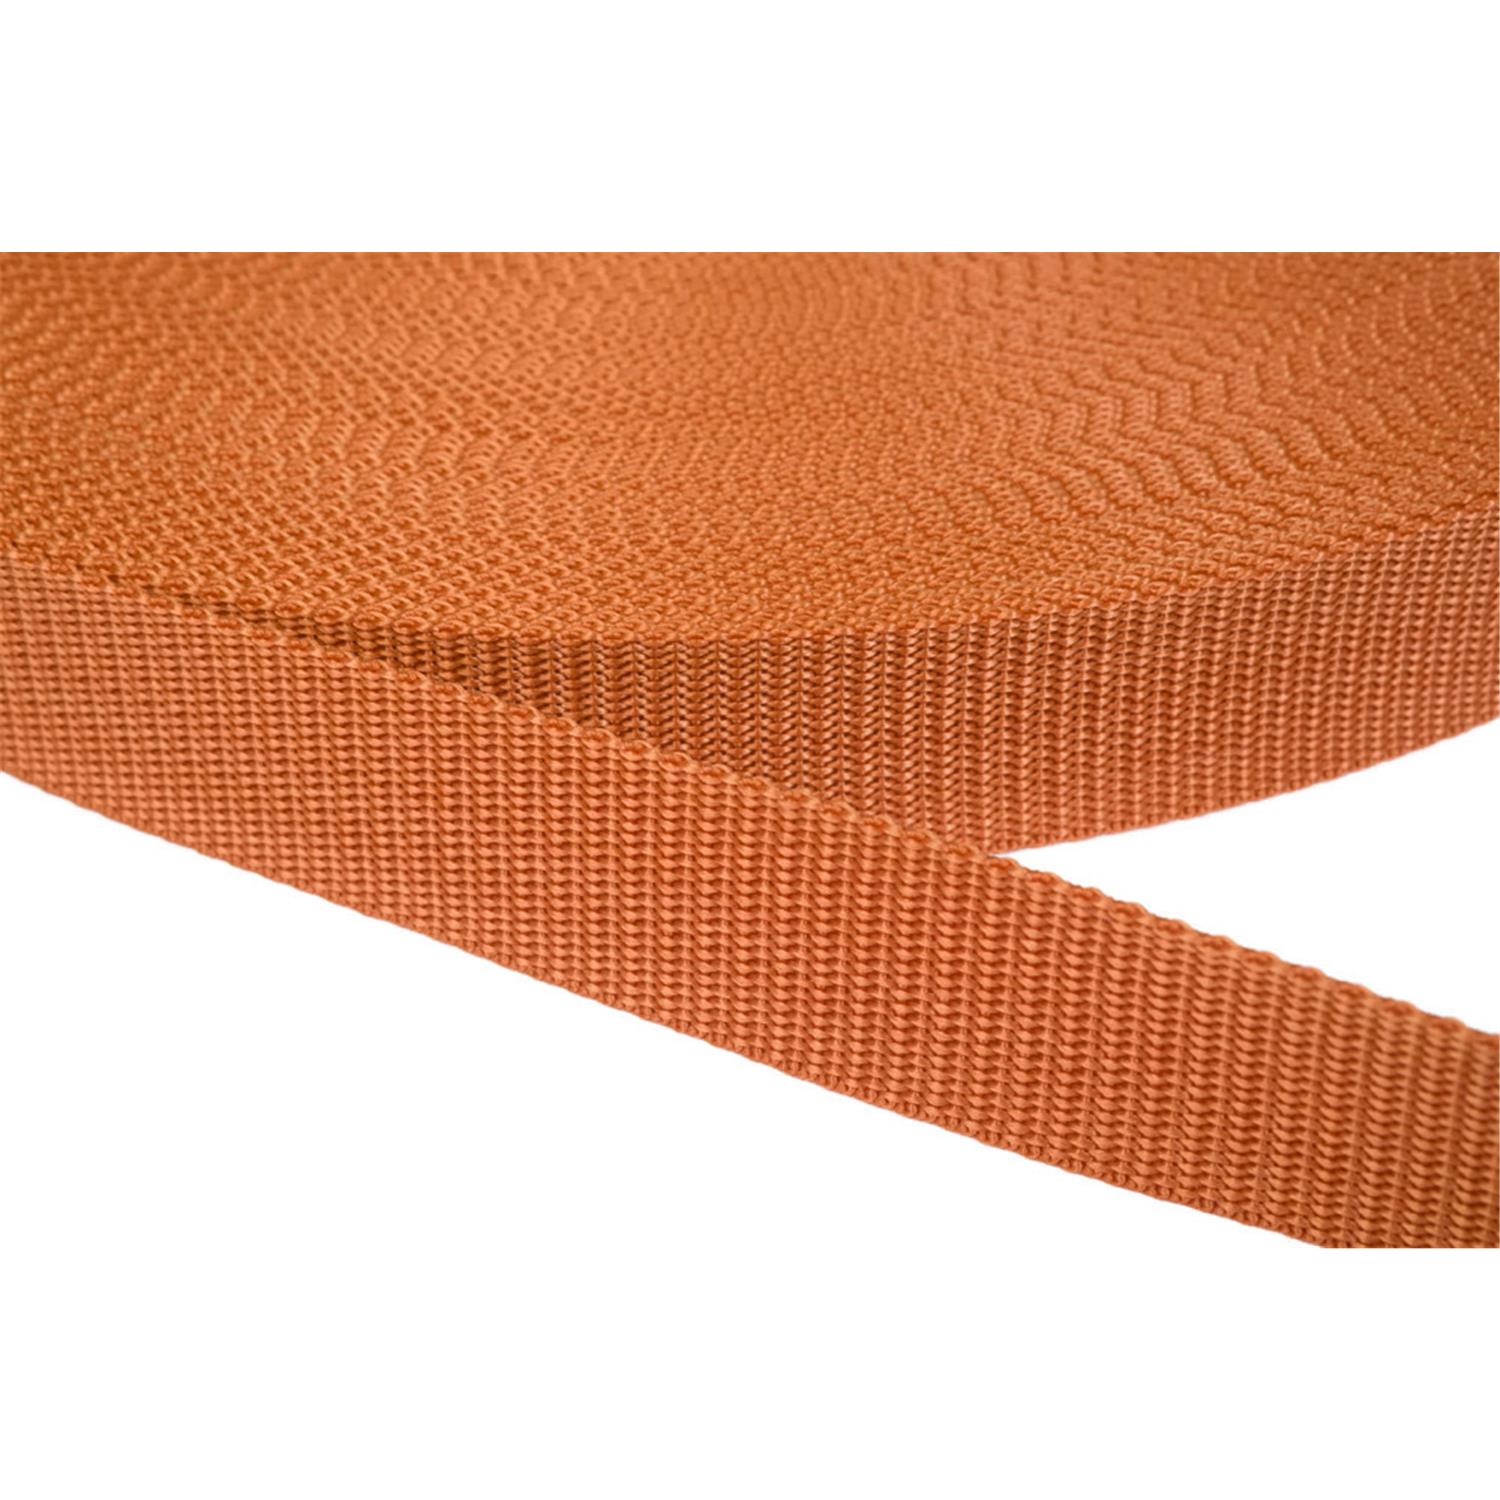 Gurtband 50mm breit aus Polypropylen in 41 Farben 05 - ockerbraun 50 Meter